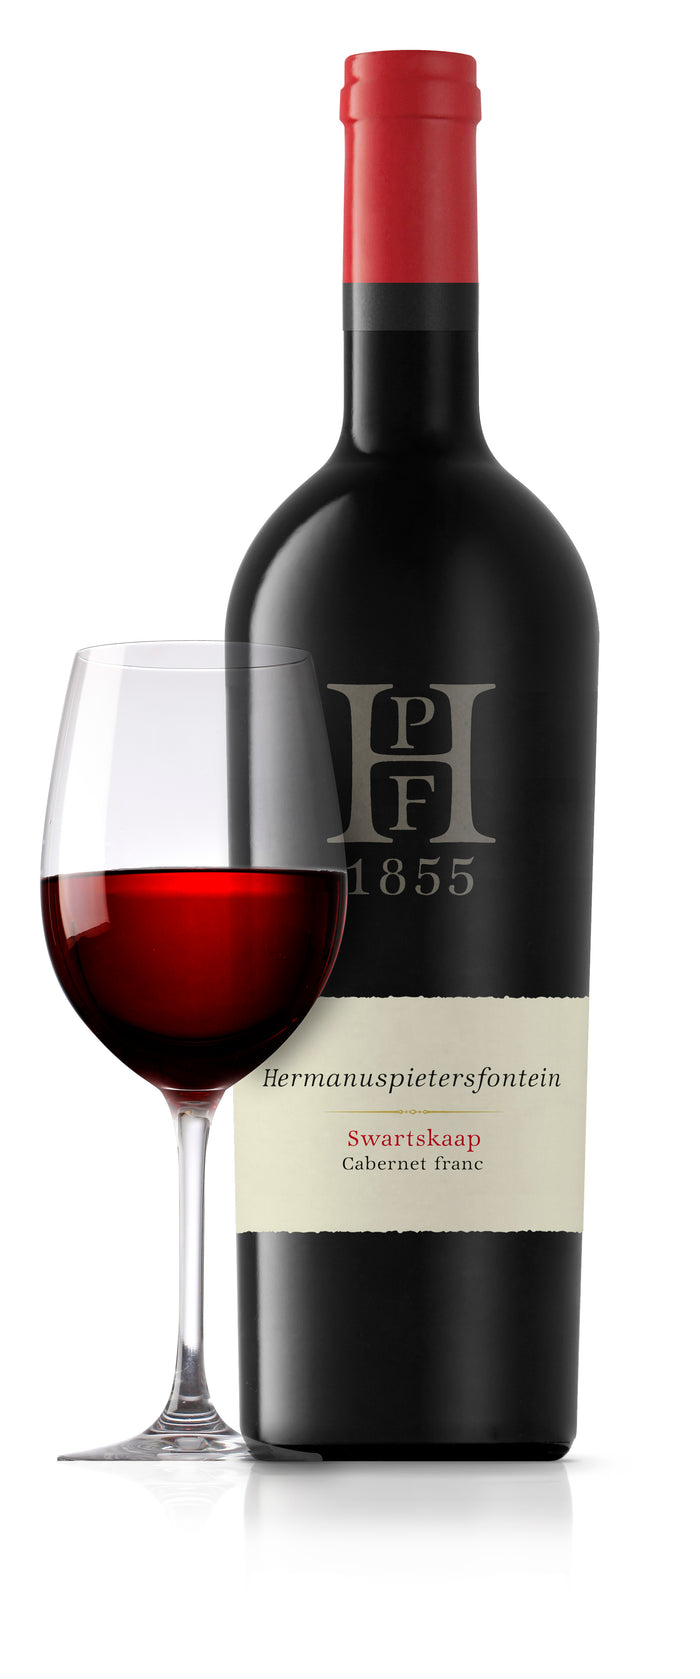 Swartskaap (Cabernet franc) - Hermanuspietersfontein Wines 